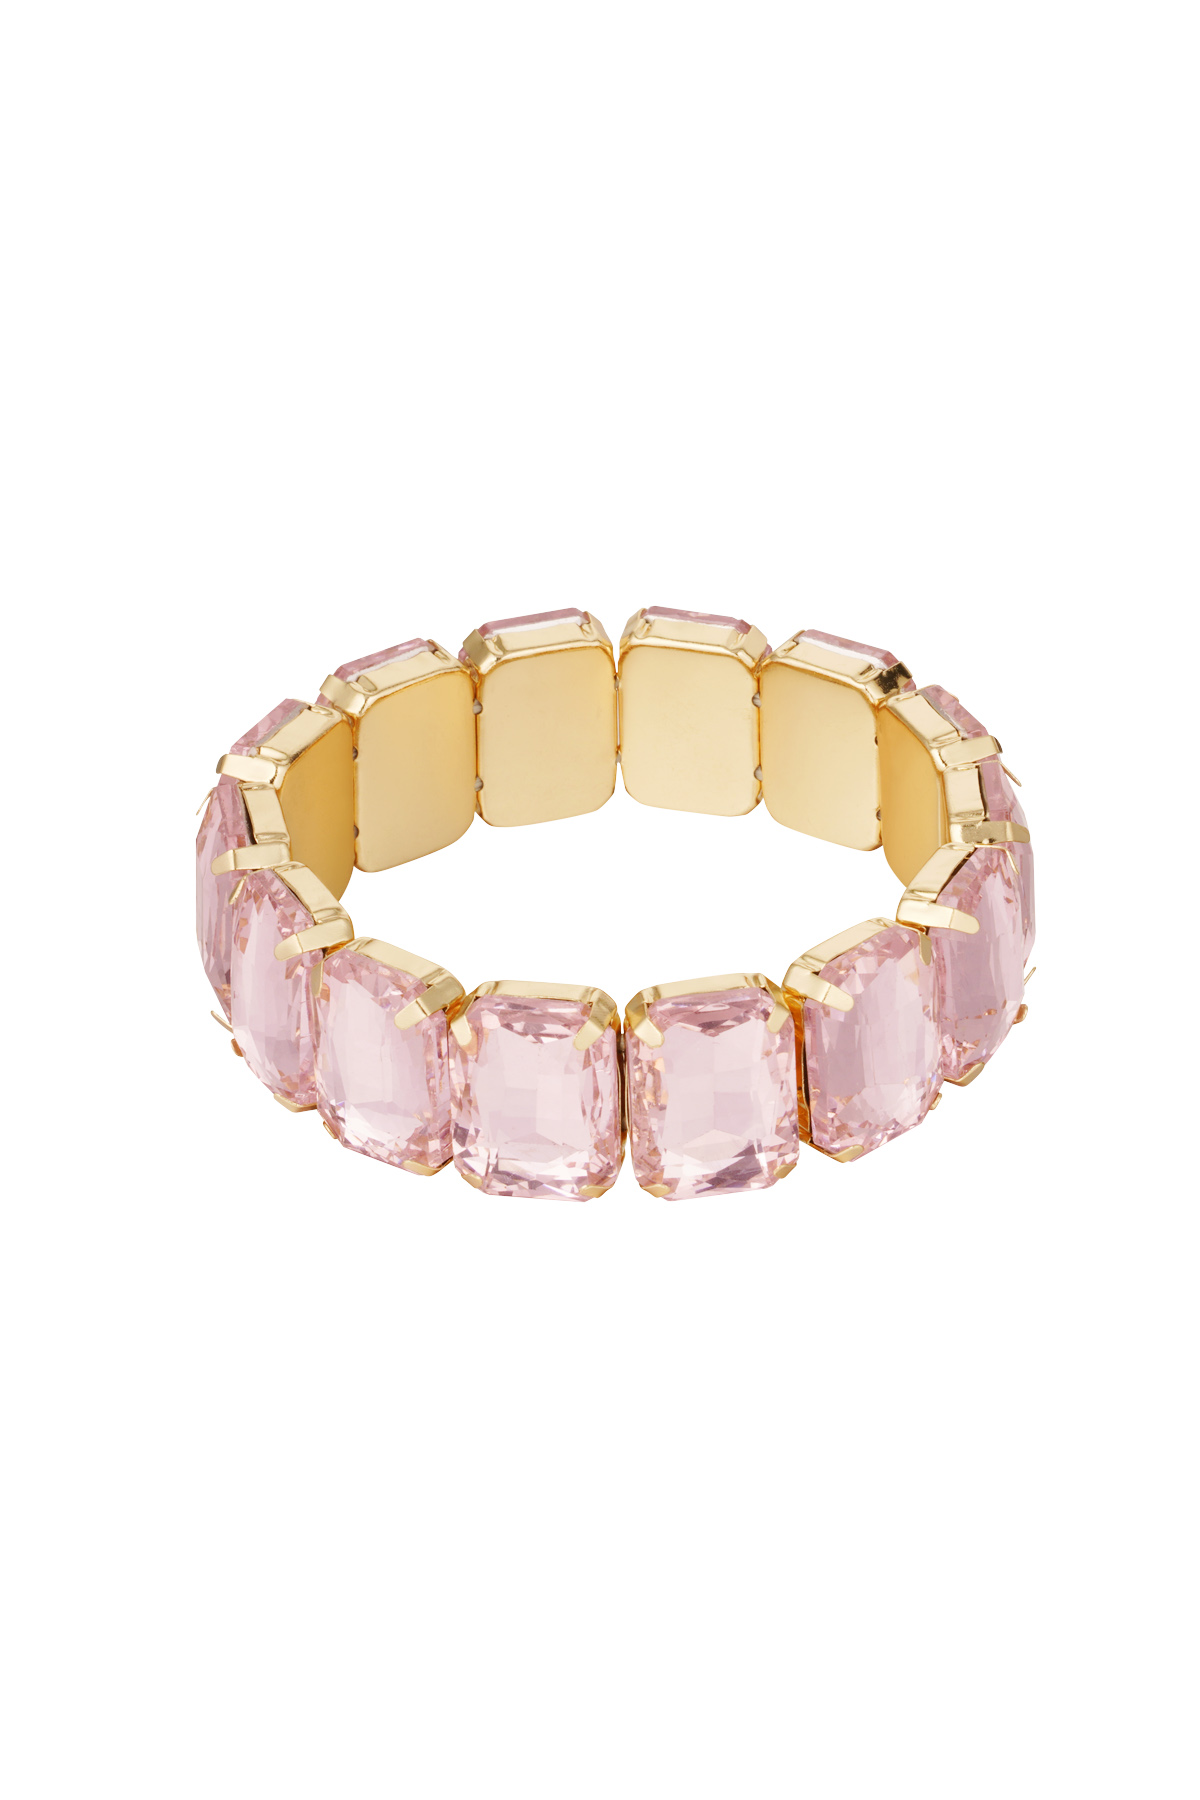 Slave bracelet large stones - gold/pink